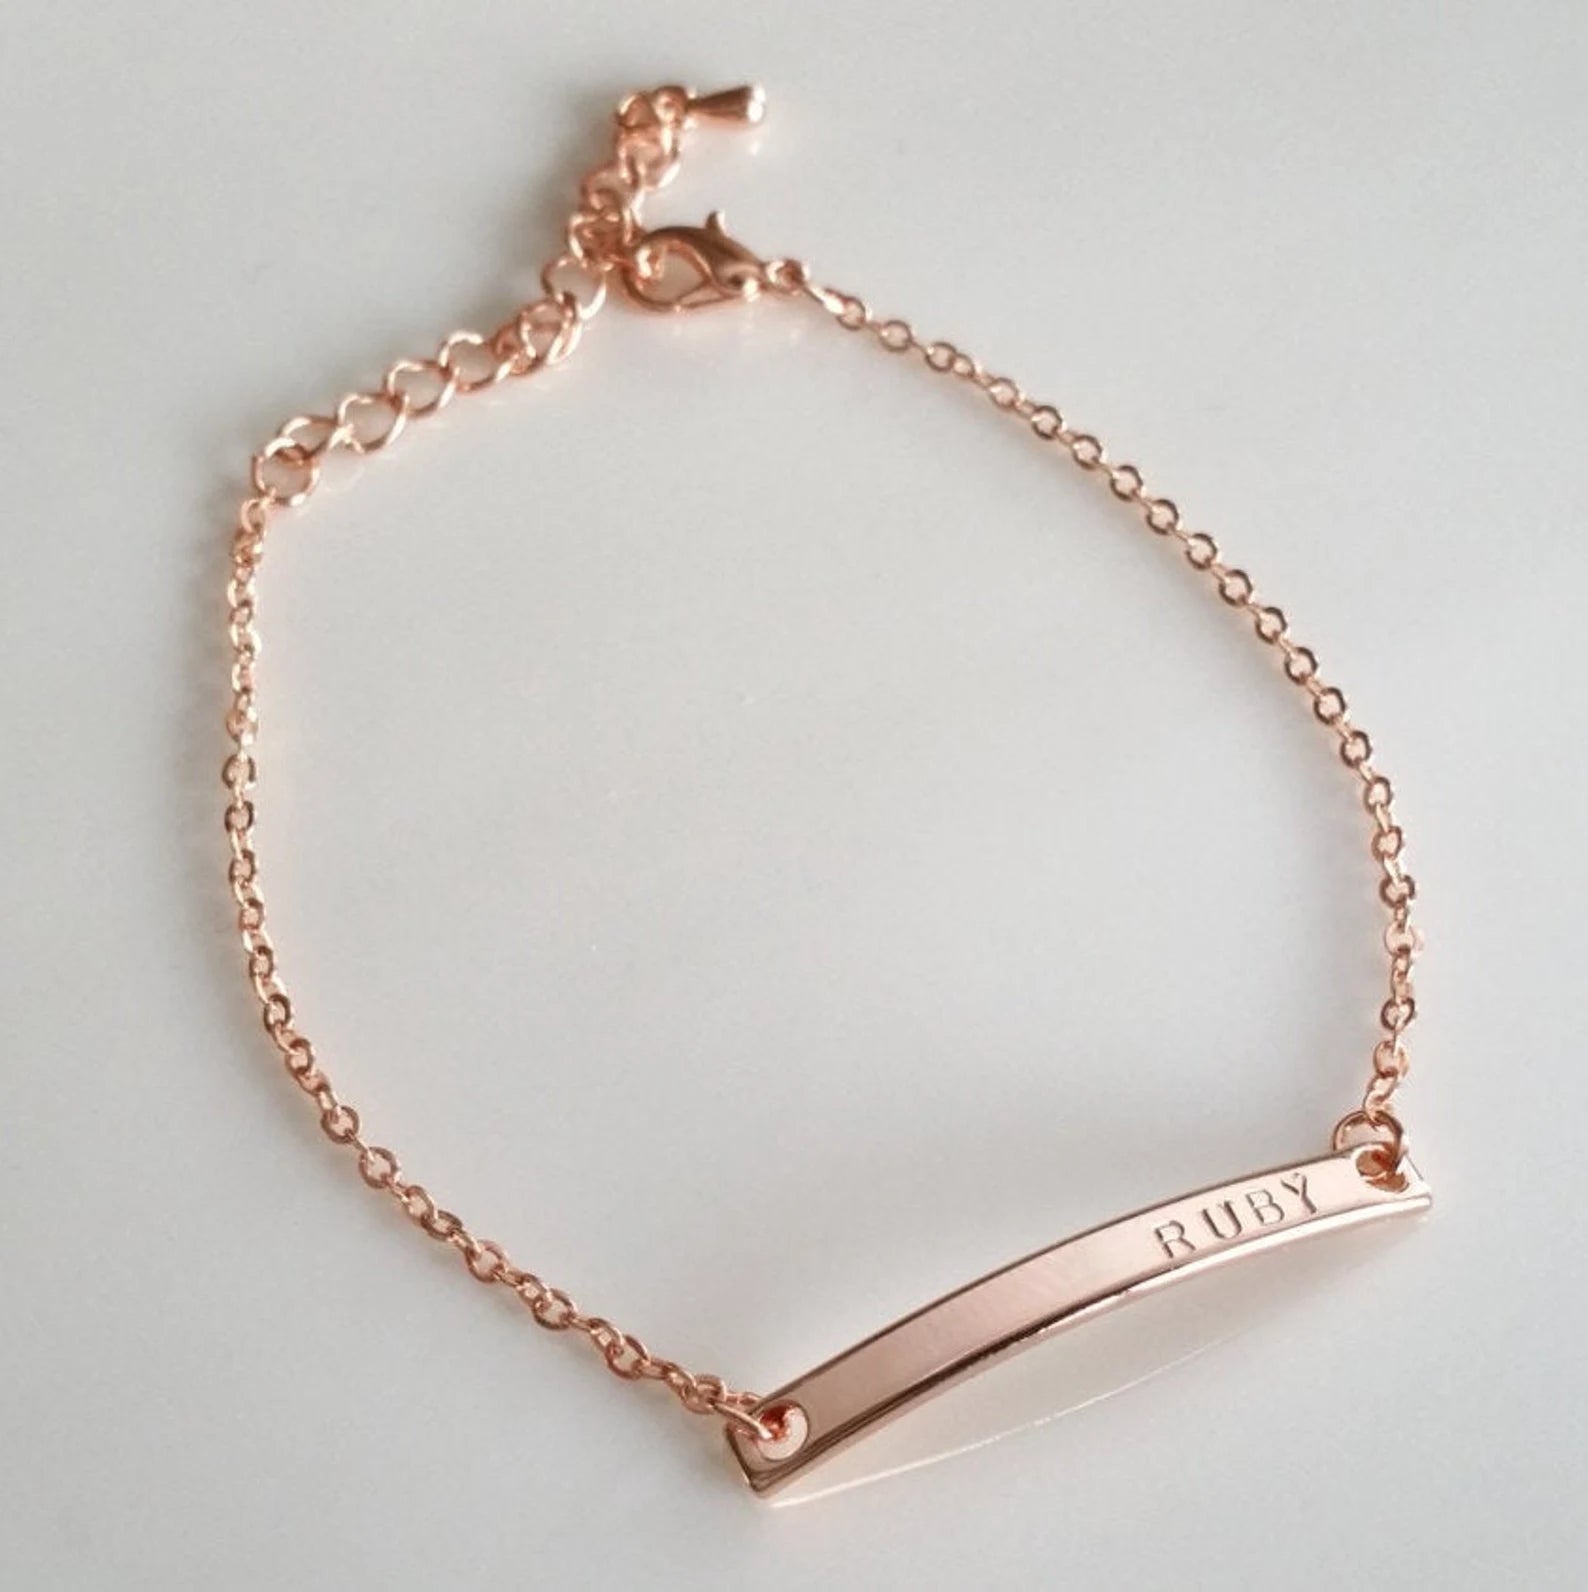 Personalized Bar Bracelets for Women Custom Name Bracelet Engraved Bracelet  Initial Nameplate Monogram Bracelet Mothers Day Gift